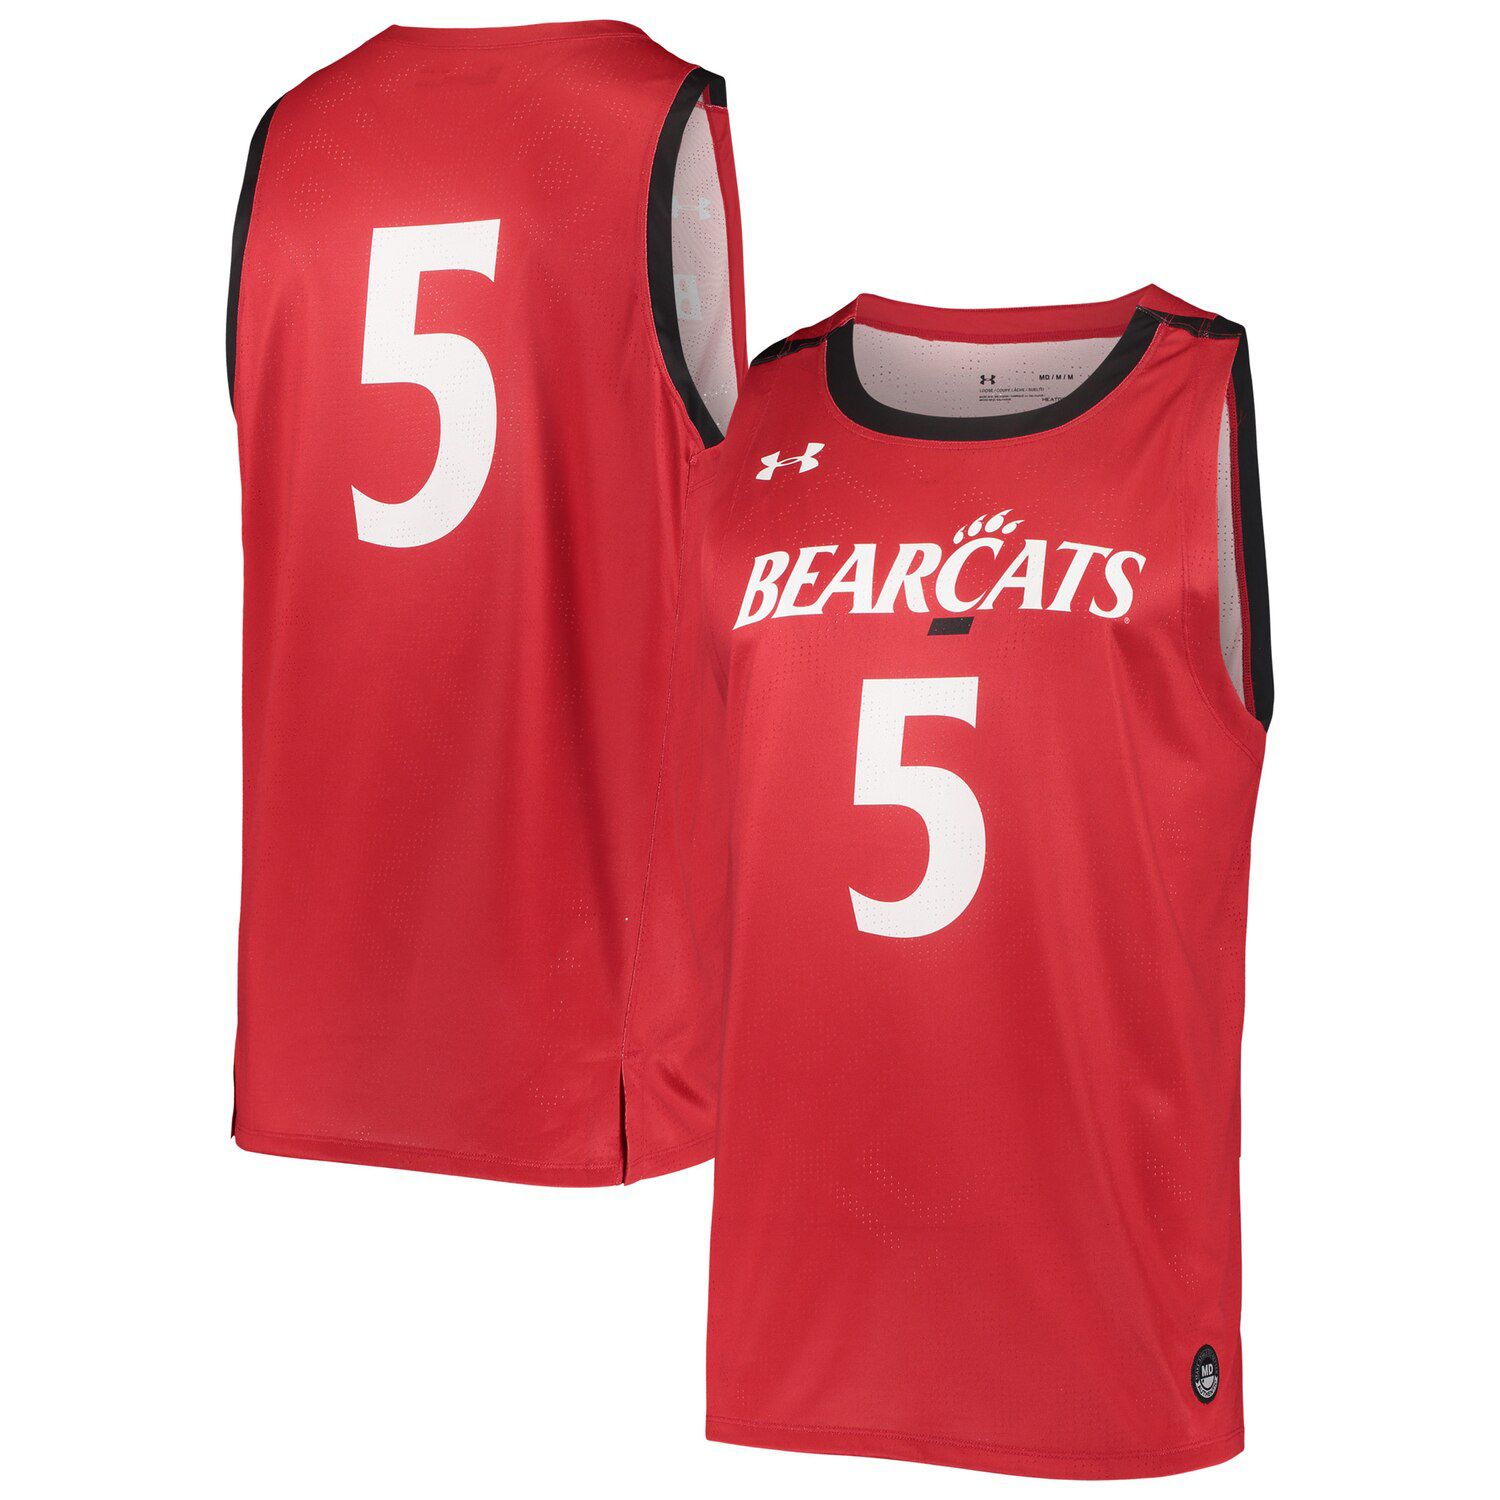 bearcats basketball jersey